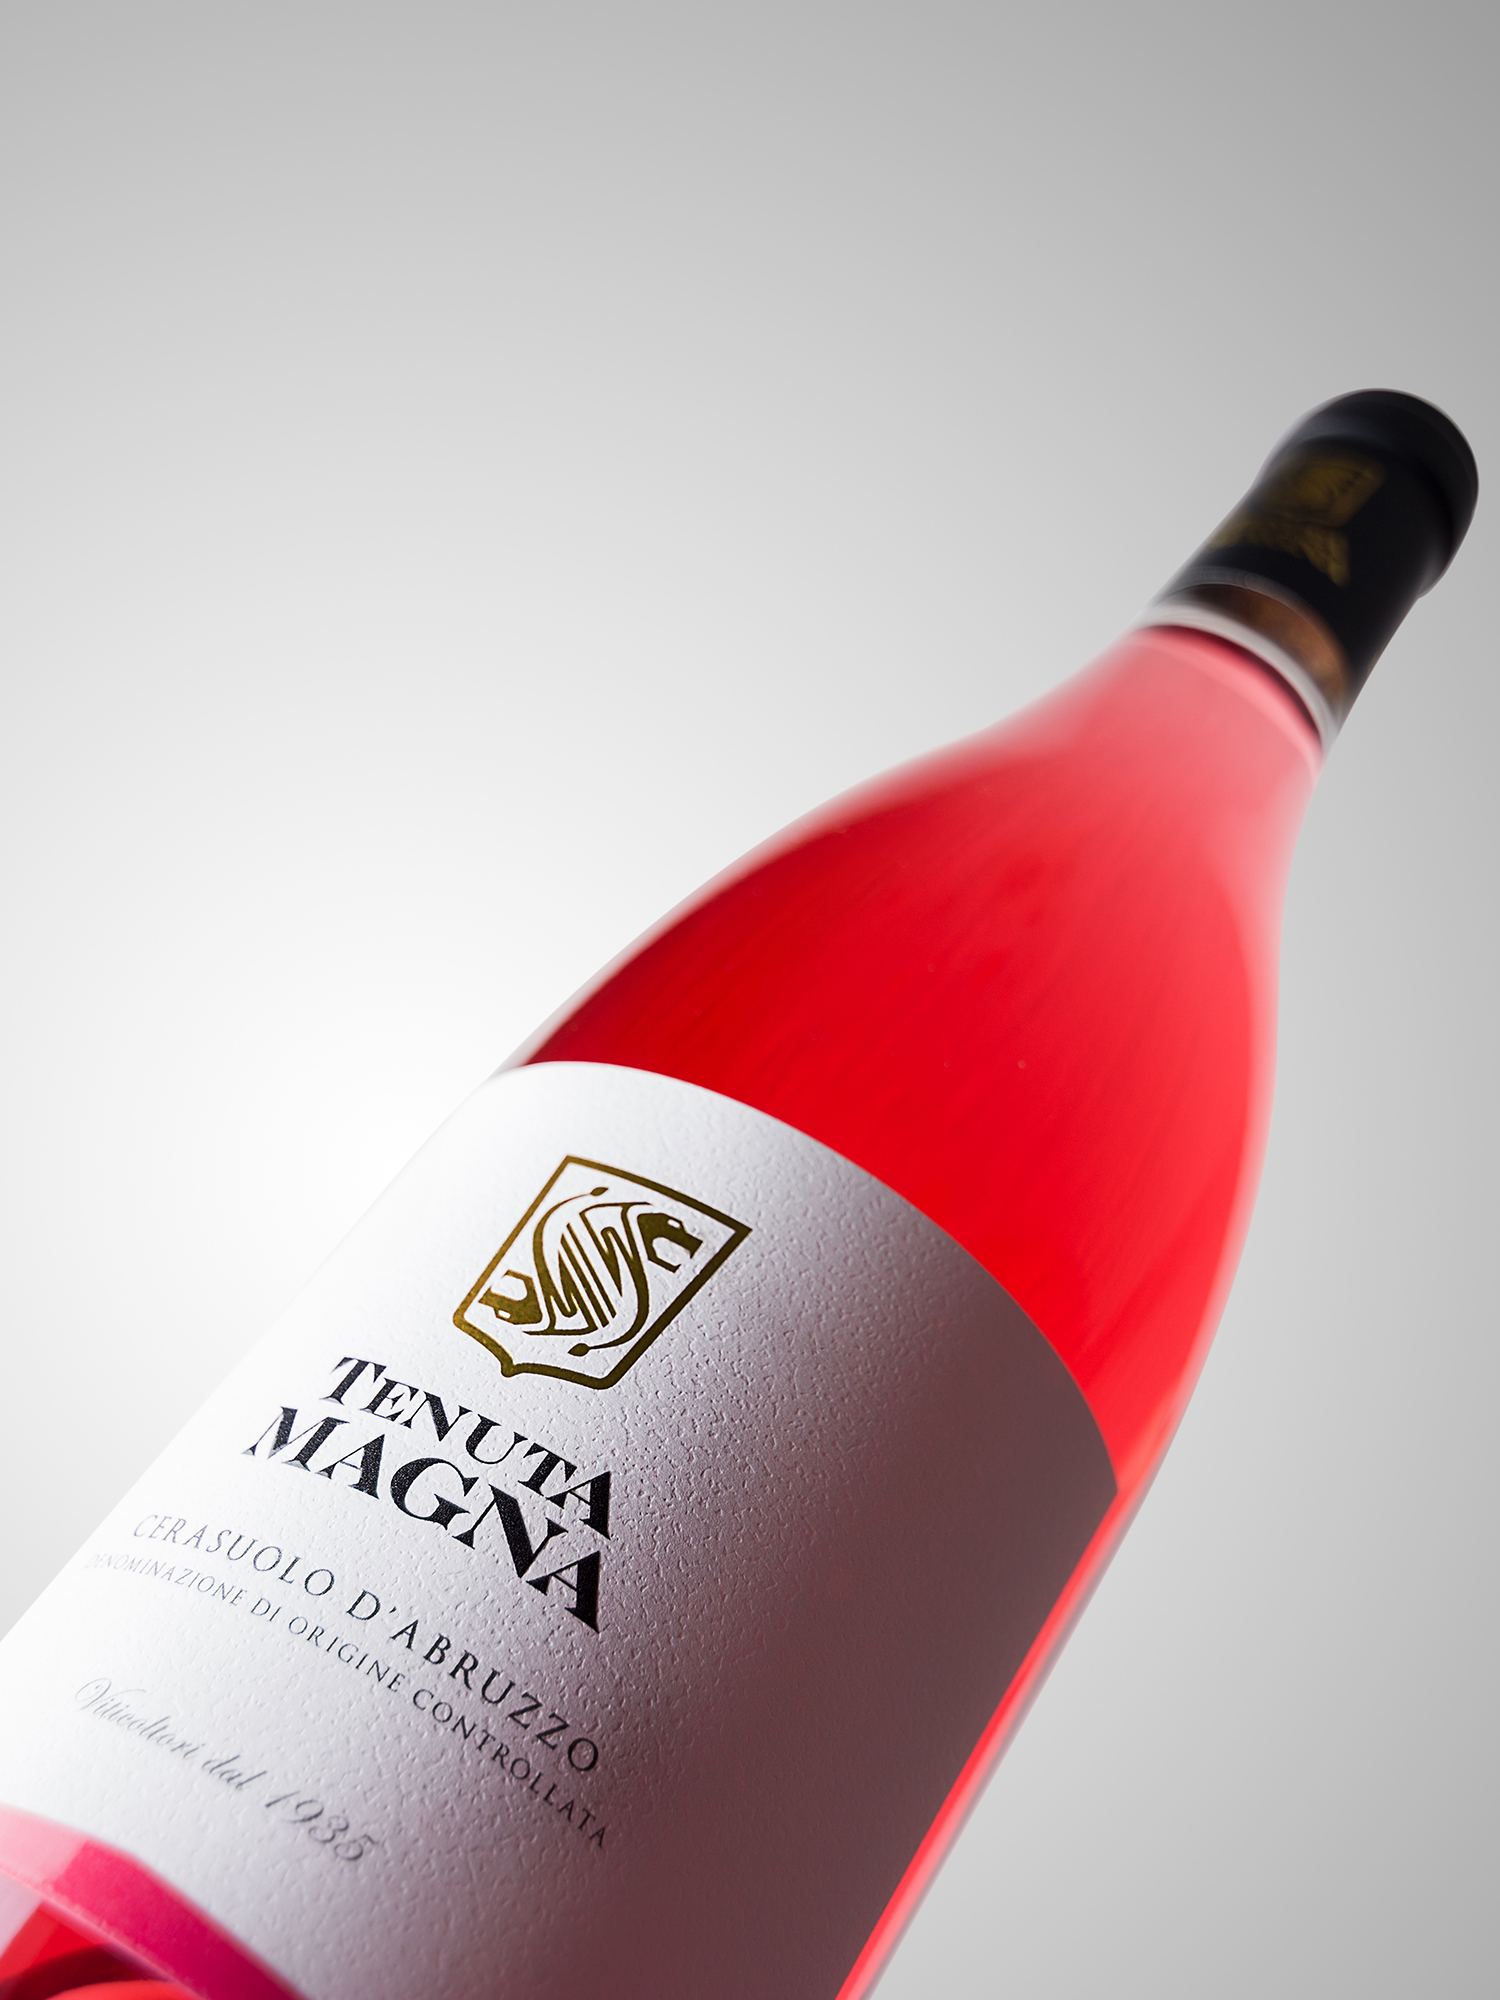 Bottiglia borgognotta vino Cerasuolo d'abruzzo linea Tenuta Magna